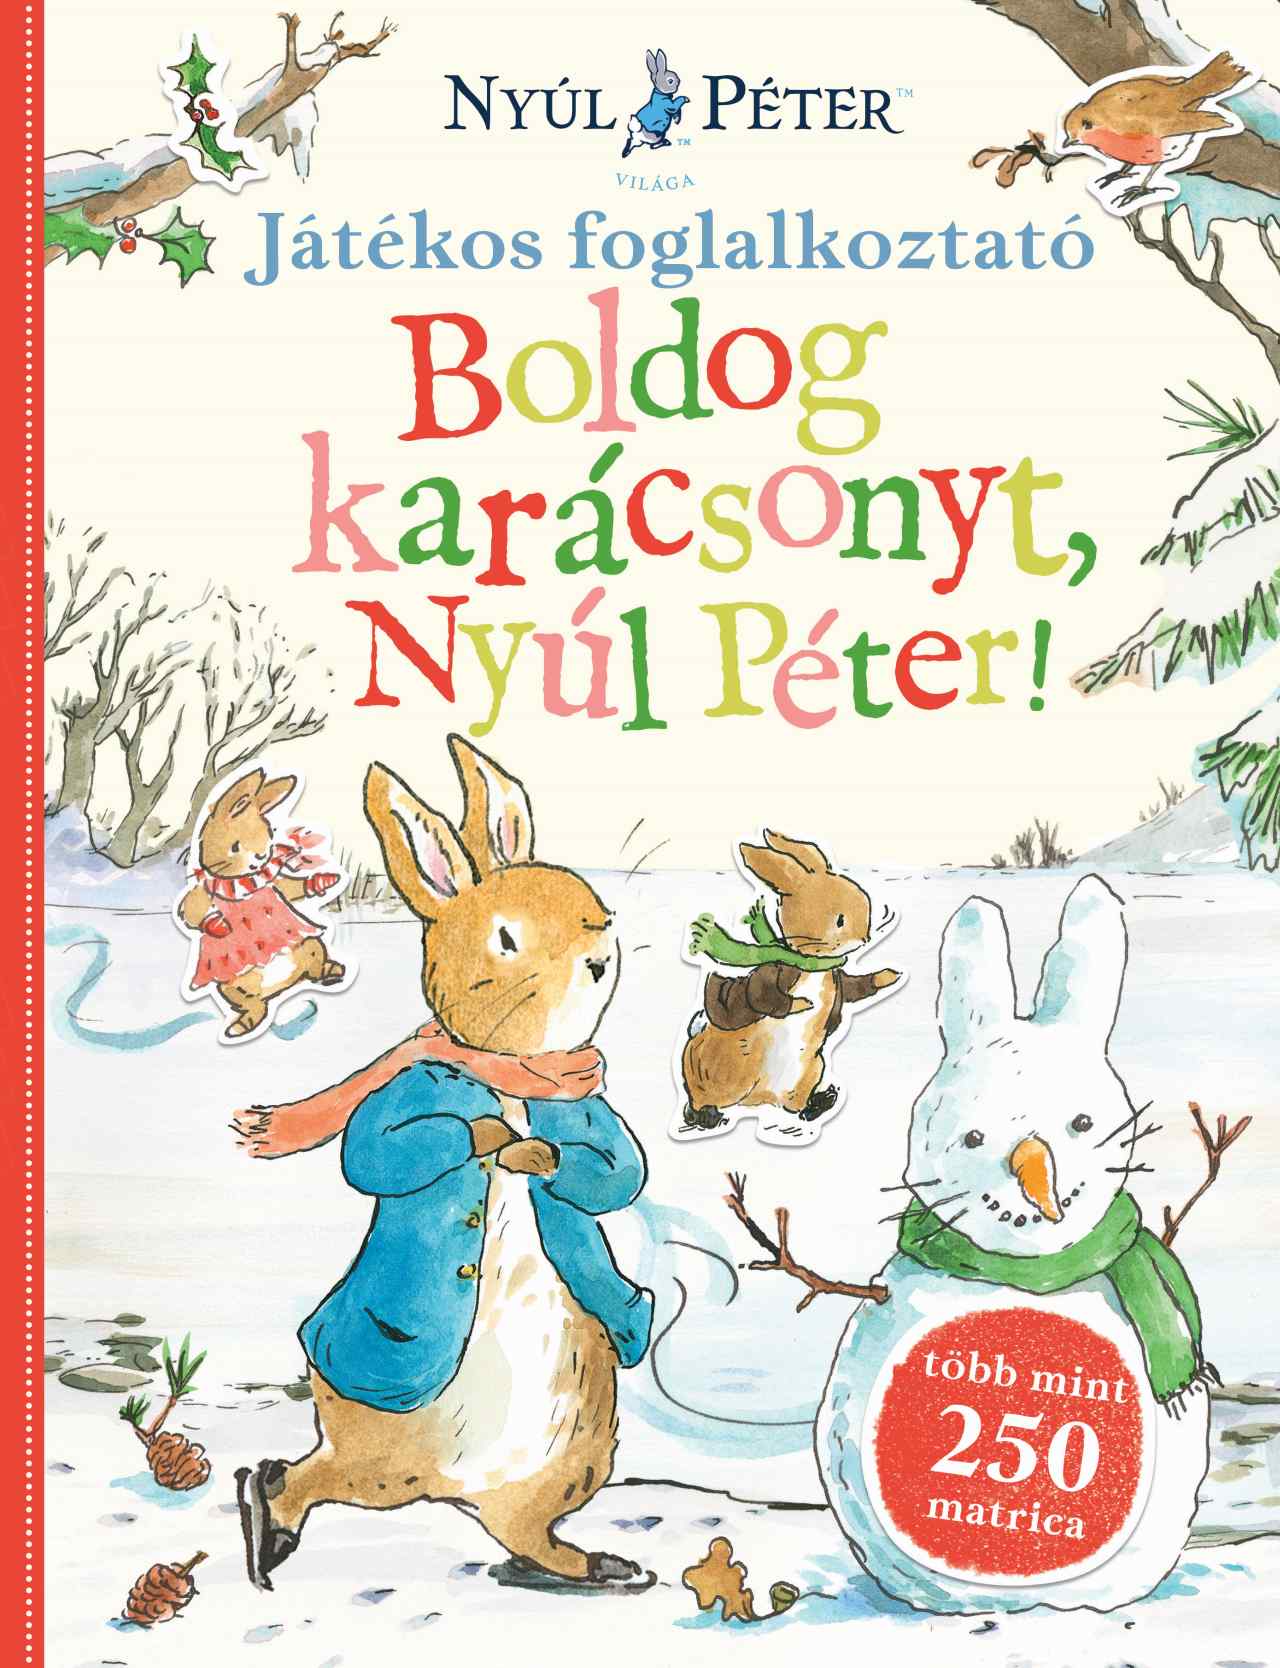 Beatrix Potter - Nyúl Péter világa - Boldog karácsonyt, Nyúl Péter!